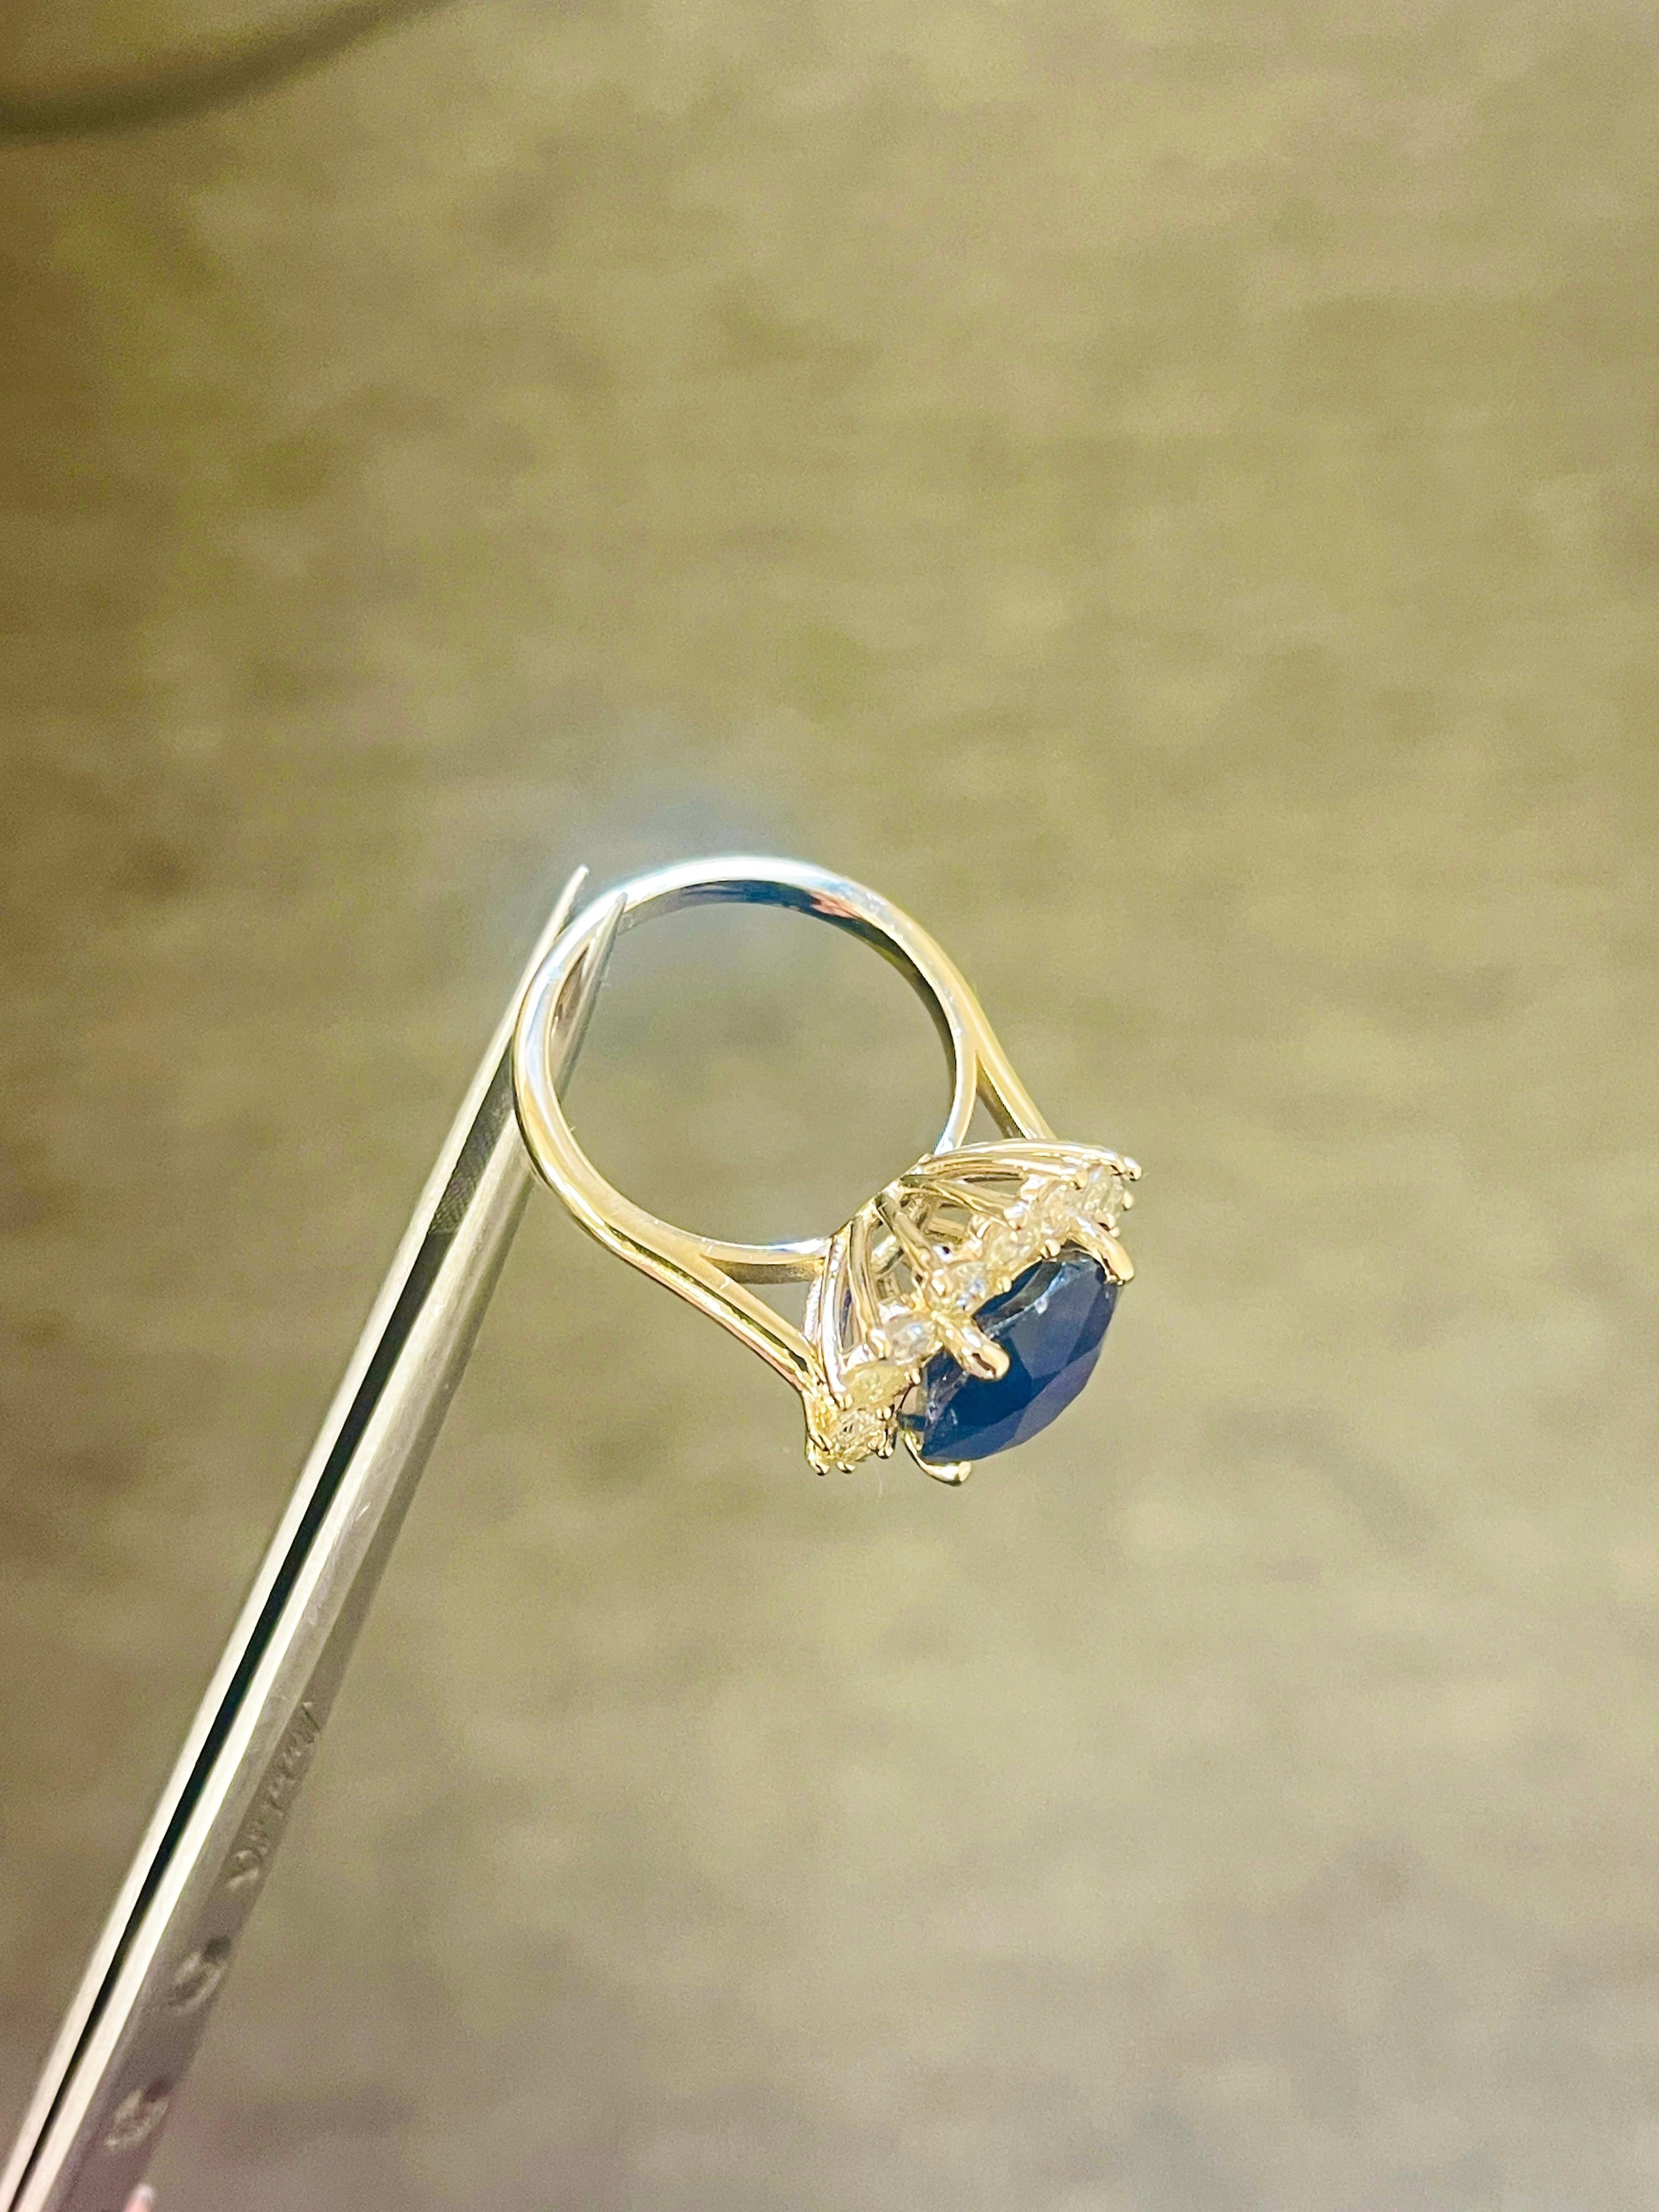 8,71 Karat intensiver blauer Ovalschliff natürlicher Saphir Diamant 14K Gelbgold Ring

8.71 Karat Natürlicher Saphir Mittelstein
1,42 Karat 17 Stück Diamanten Sekundärsteinchen
Durchschnittlich I-I, 7,25 Gramm, Größe 6,5

*Kostenloser Versand